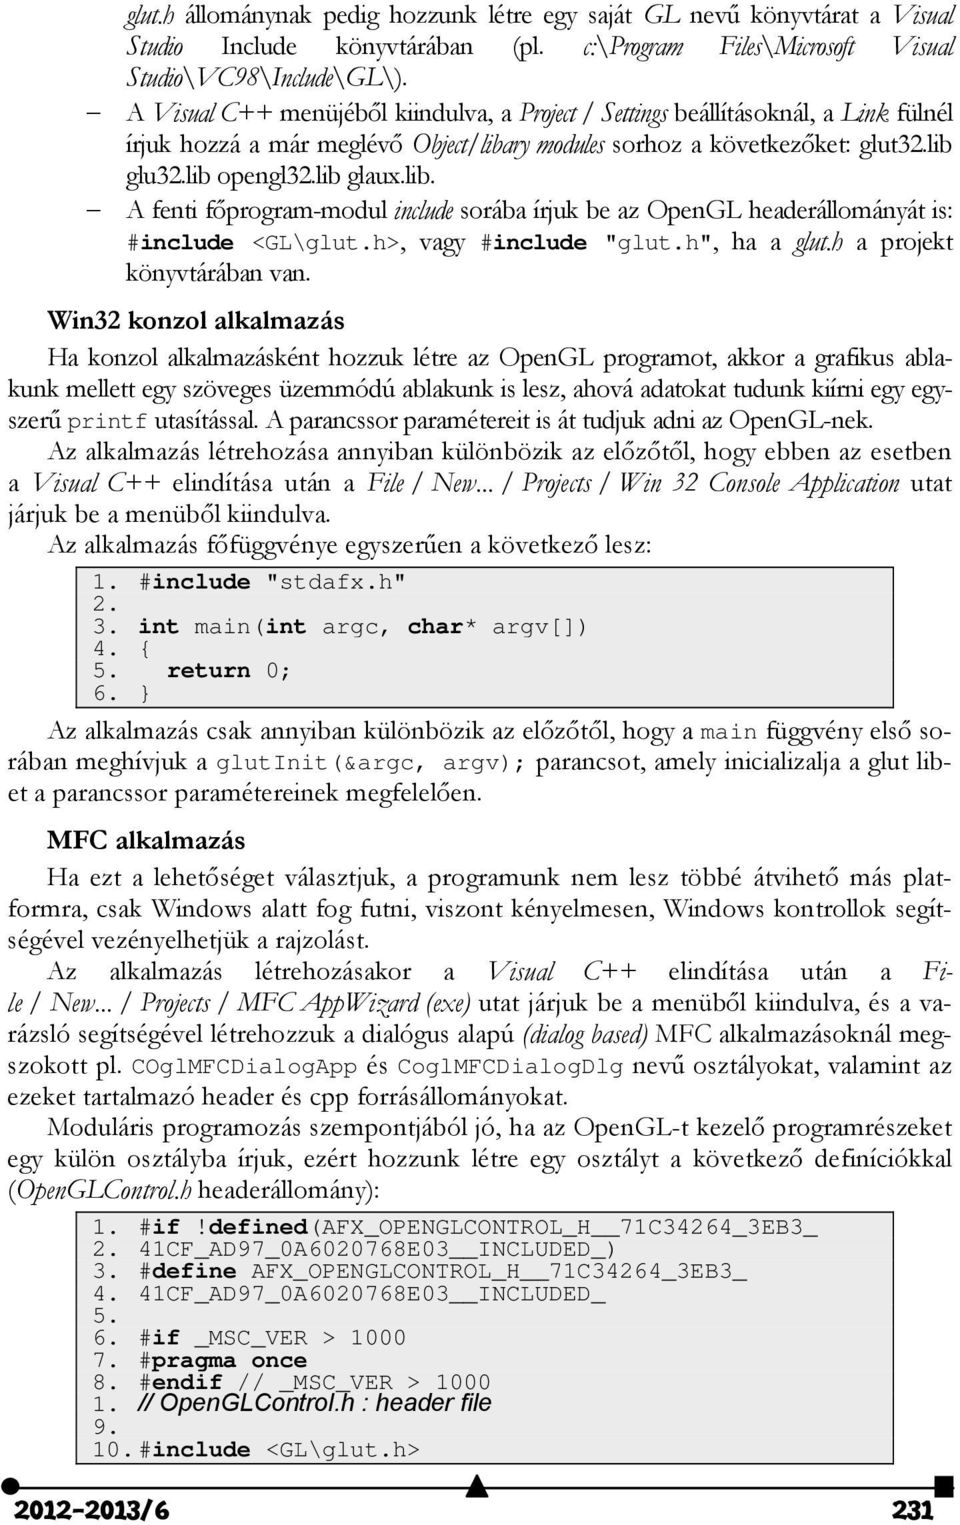 ry modules sorhoz a következőket: glut32.lib glu32.lib opengl32.lib glaux.lib. A fenti főprogram-modul include sorába írjuk be az OpenGL headerállományát is: #include <GL\glut.h>, vagy #include "glut.